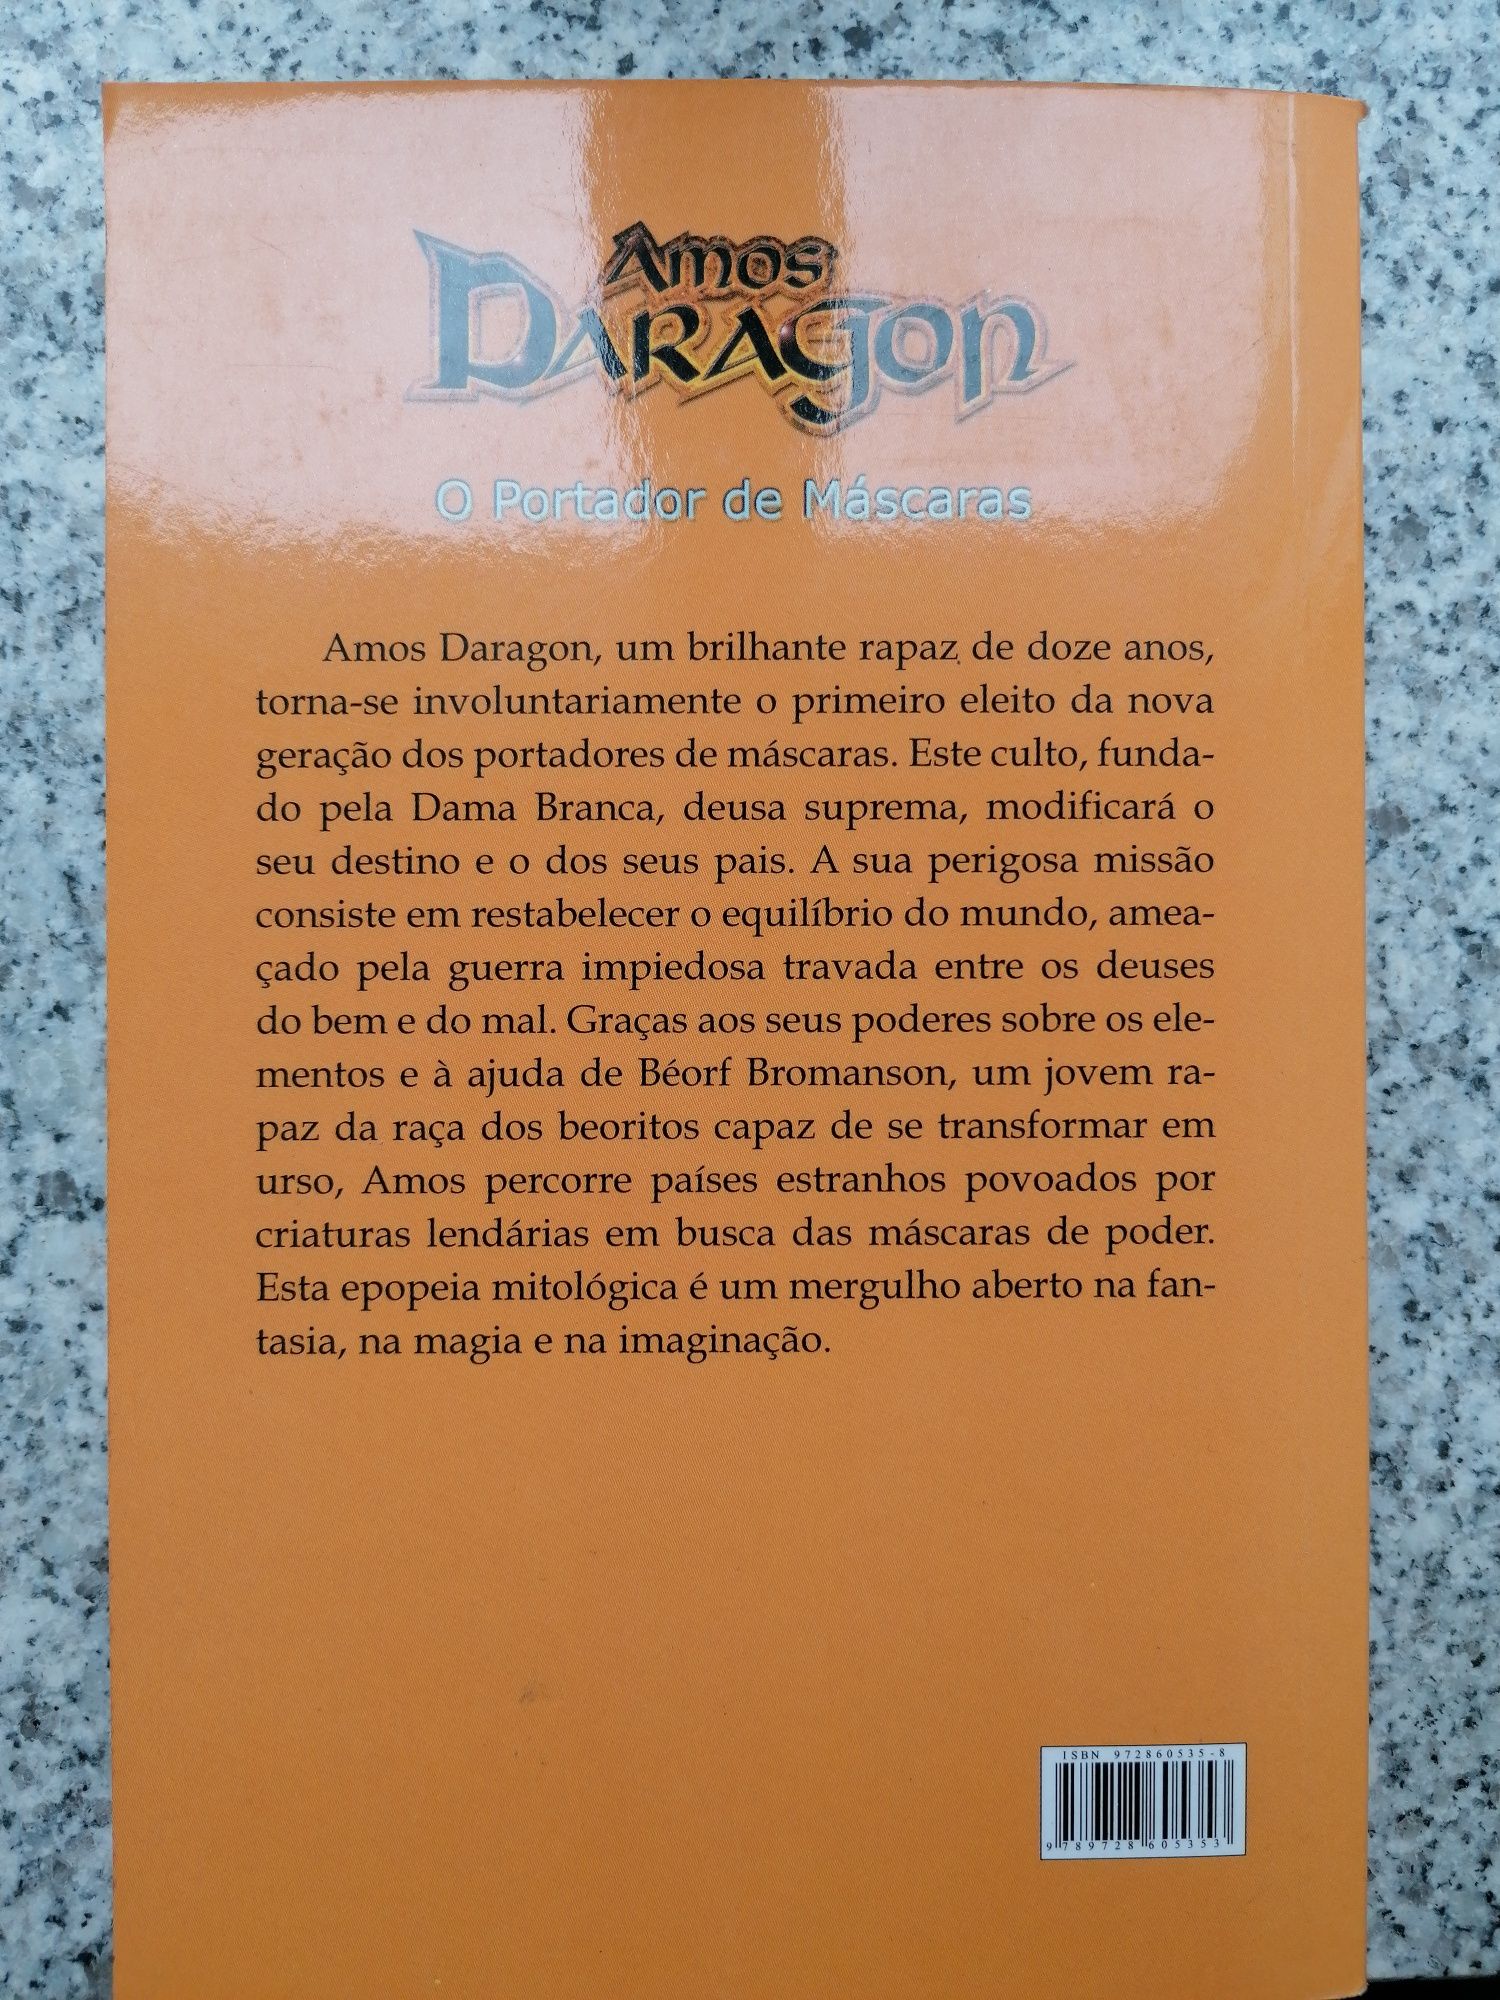 Amos Daragon O Portador de Máscaras, livro, fantasia